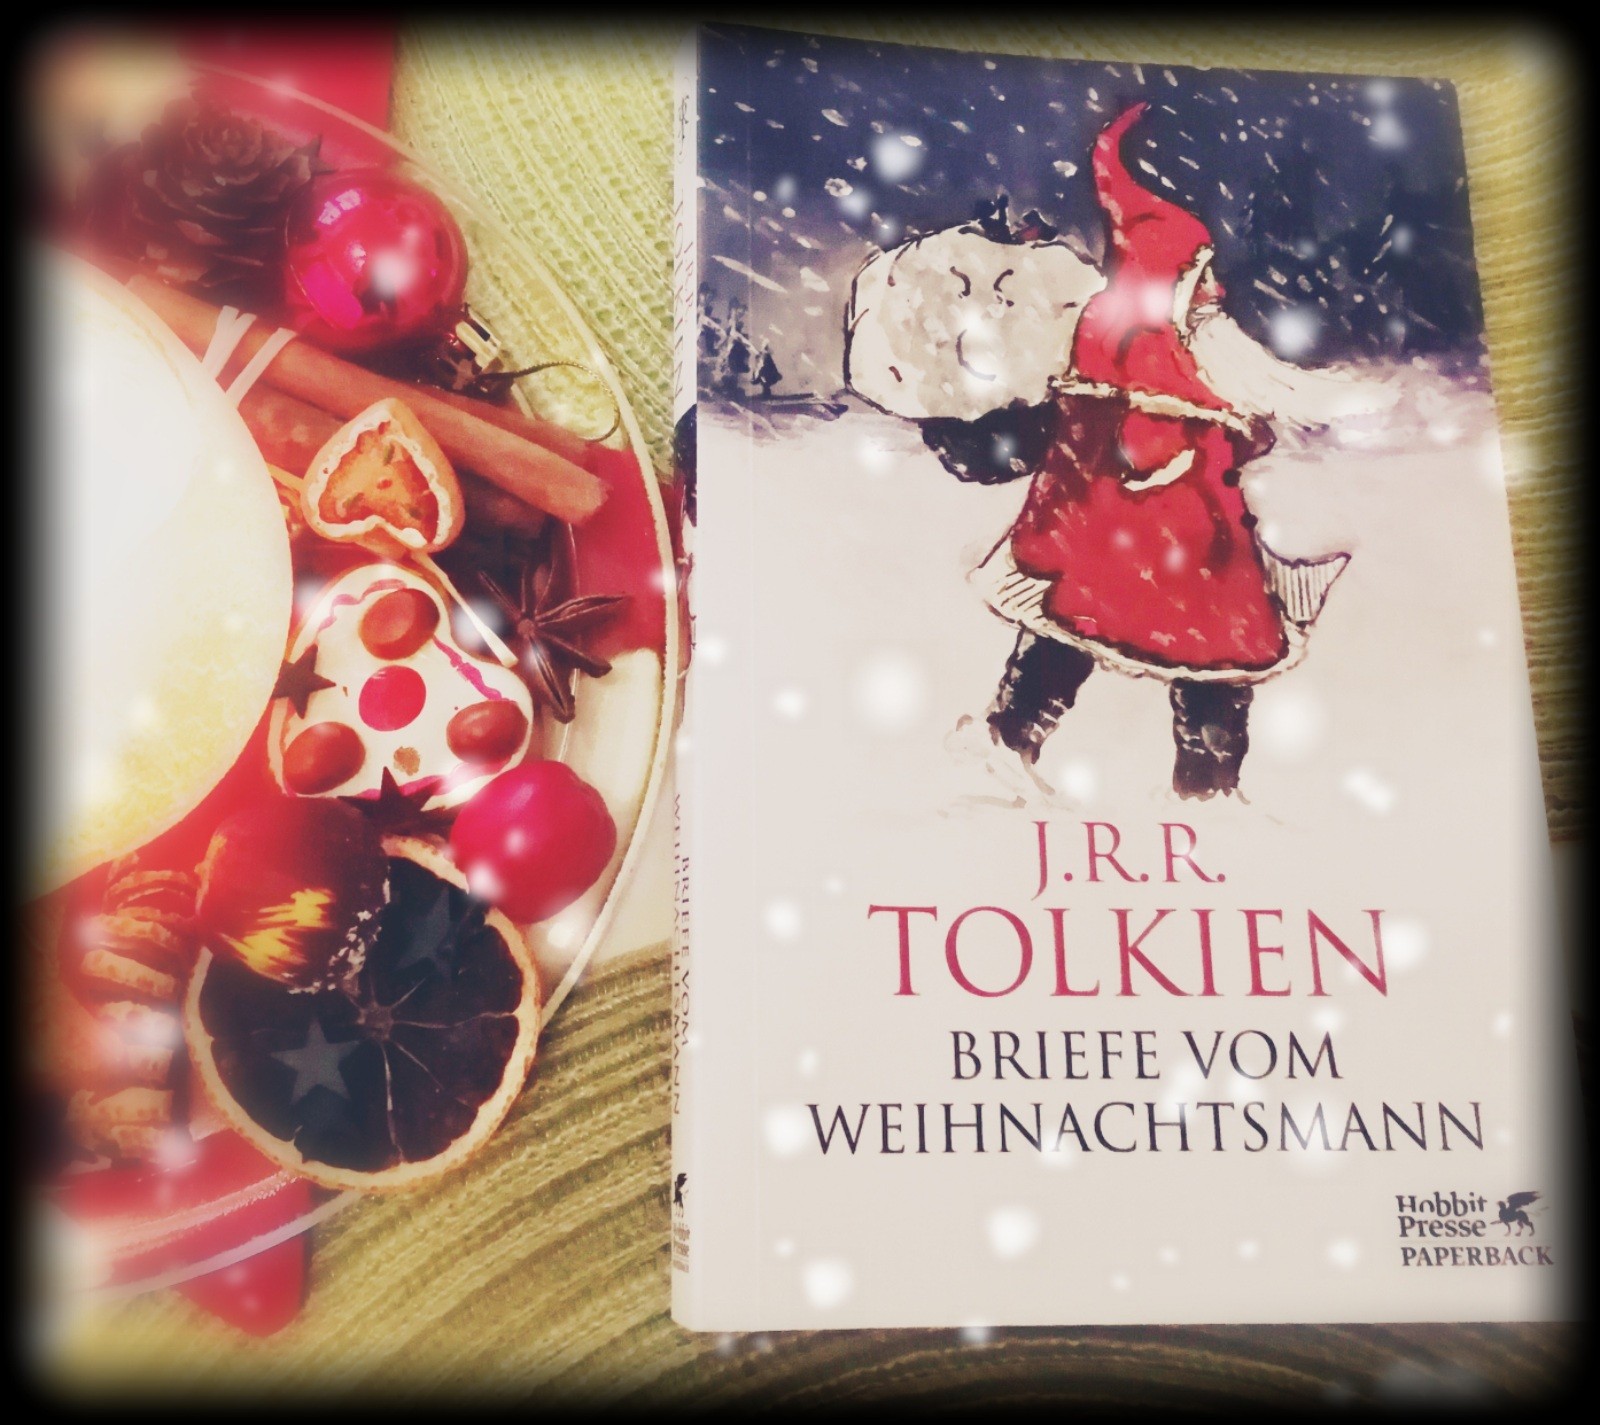 "Briefe vom Weihnachtsmann" von J.R.R. Tolkien - Der etwas andere Tolkien, schneeweiß & weihnachtlich